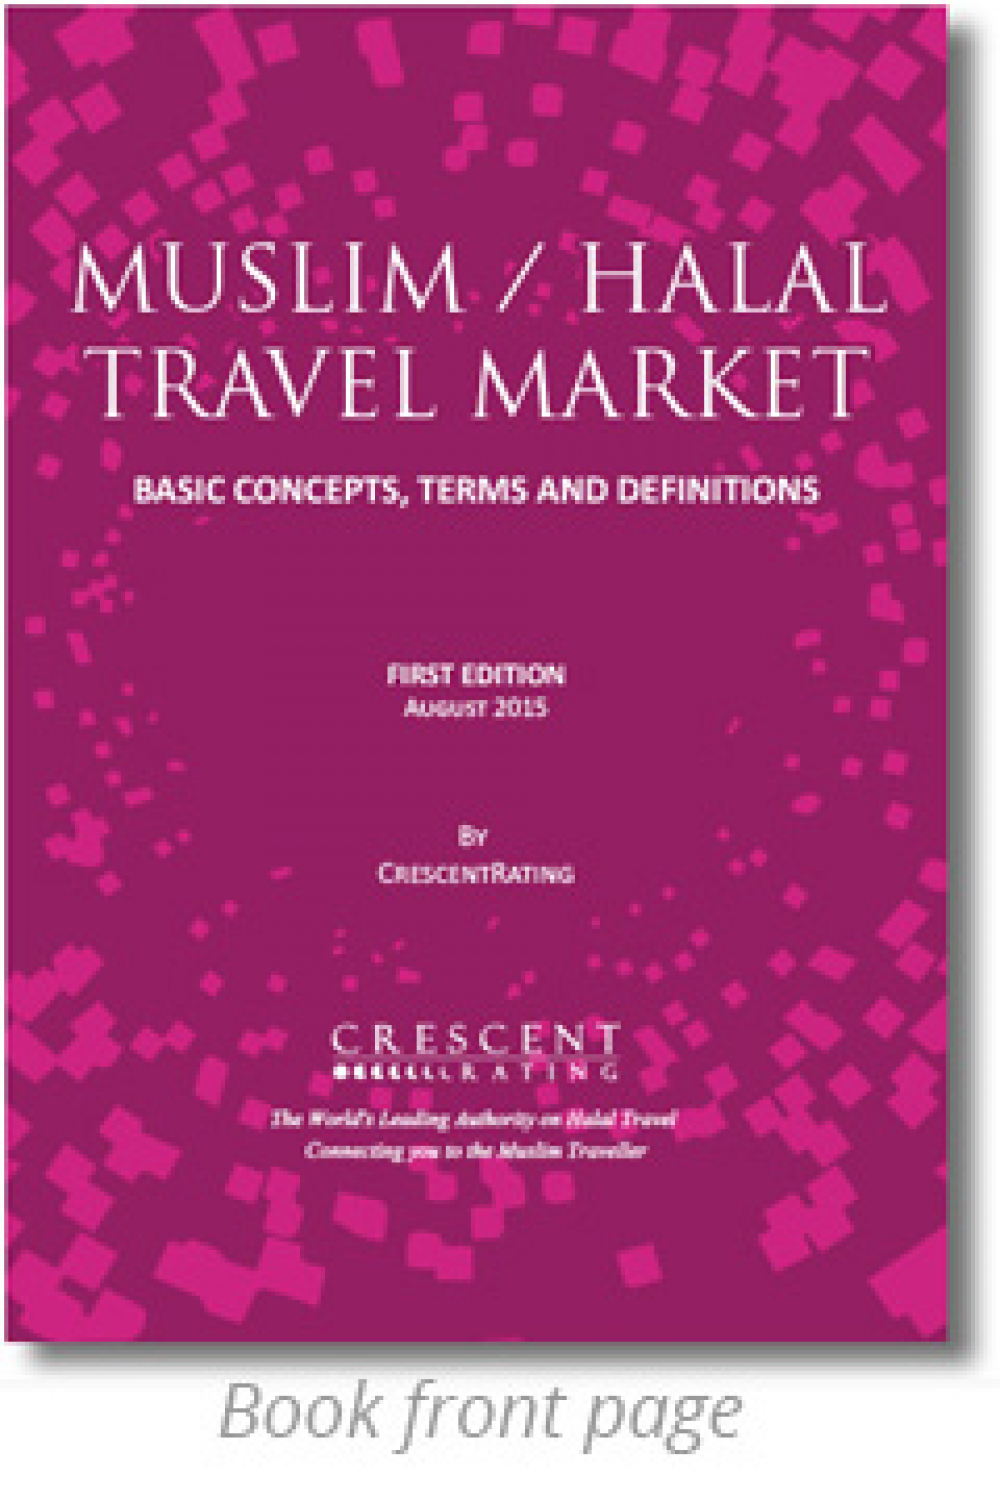 Sale a la luz el primer glosario de trminos tursticos Halal